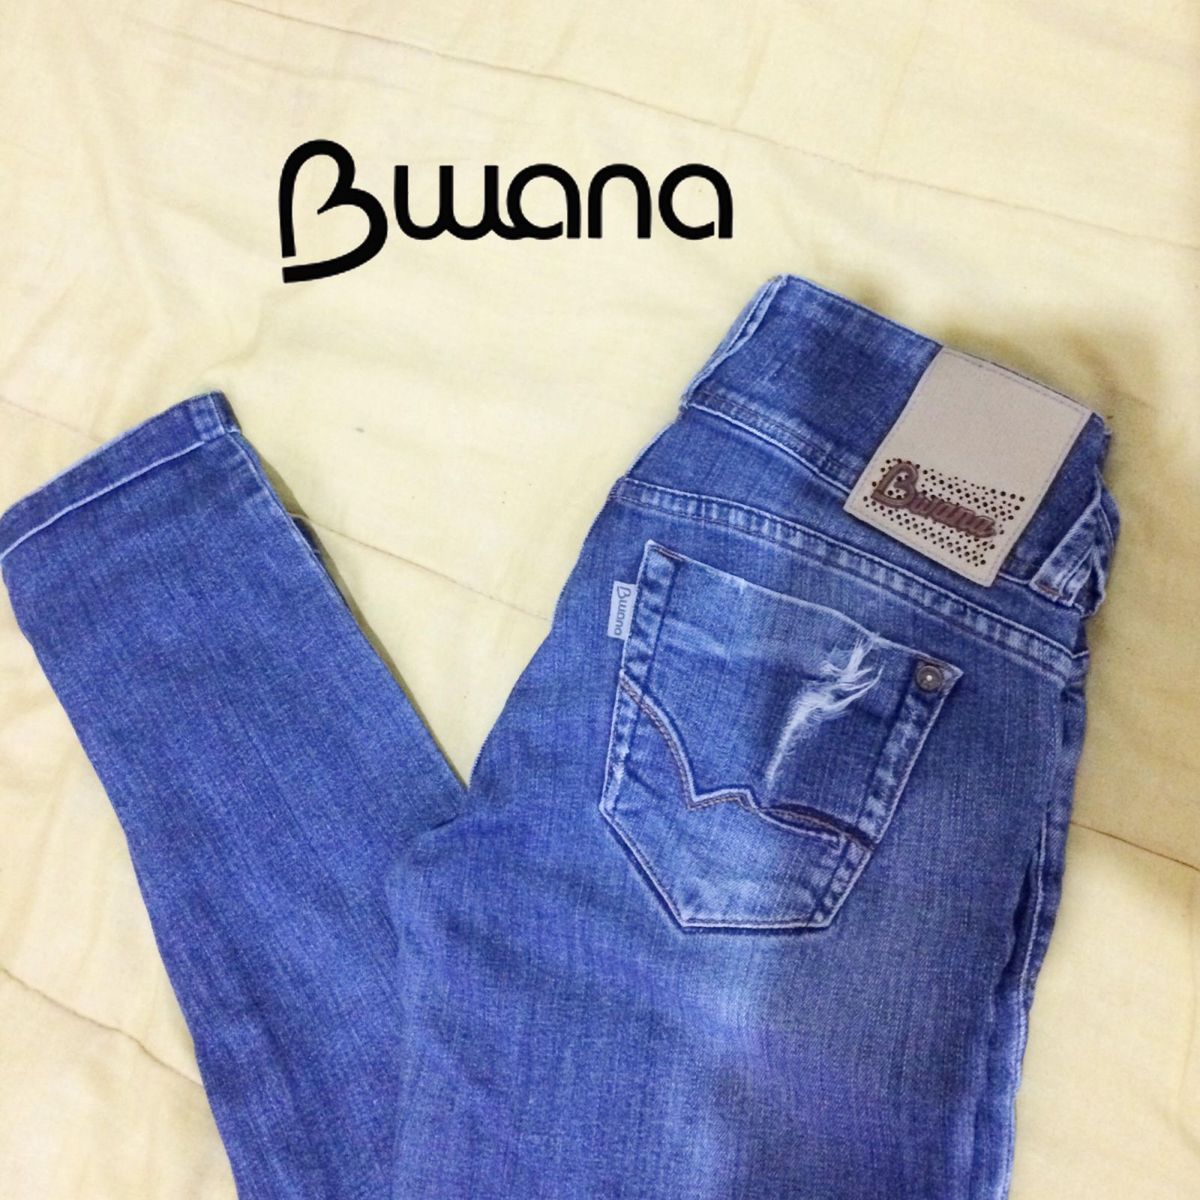 calças bwana